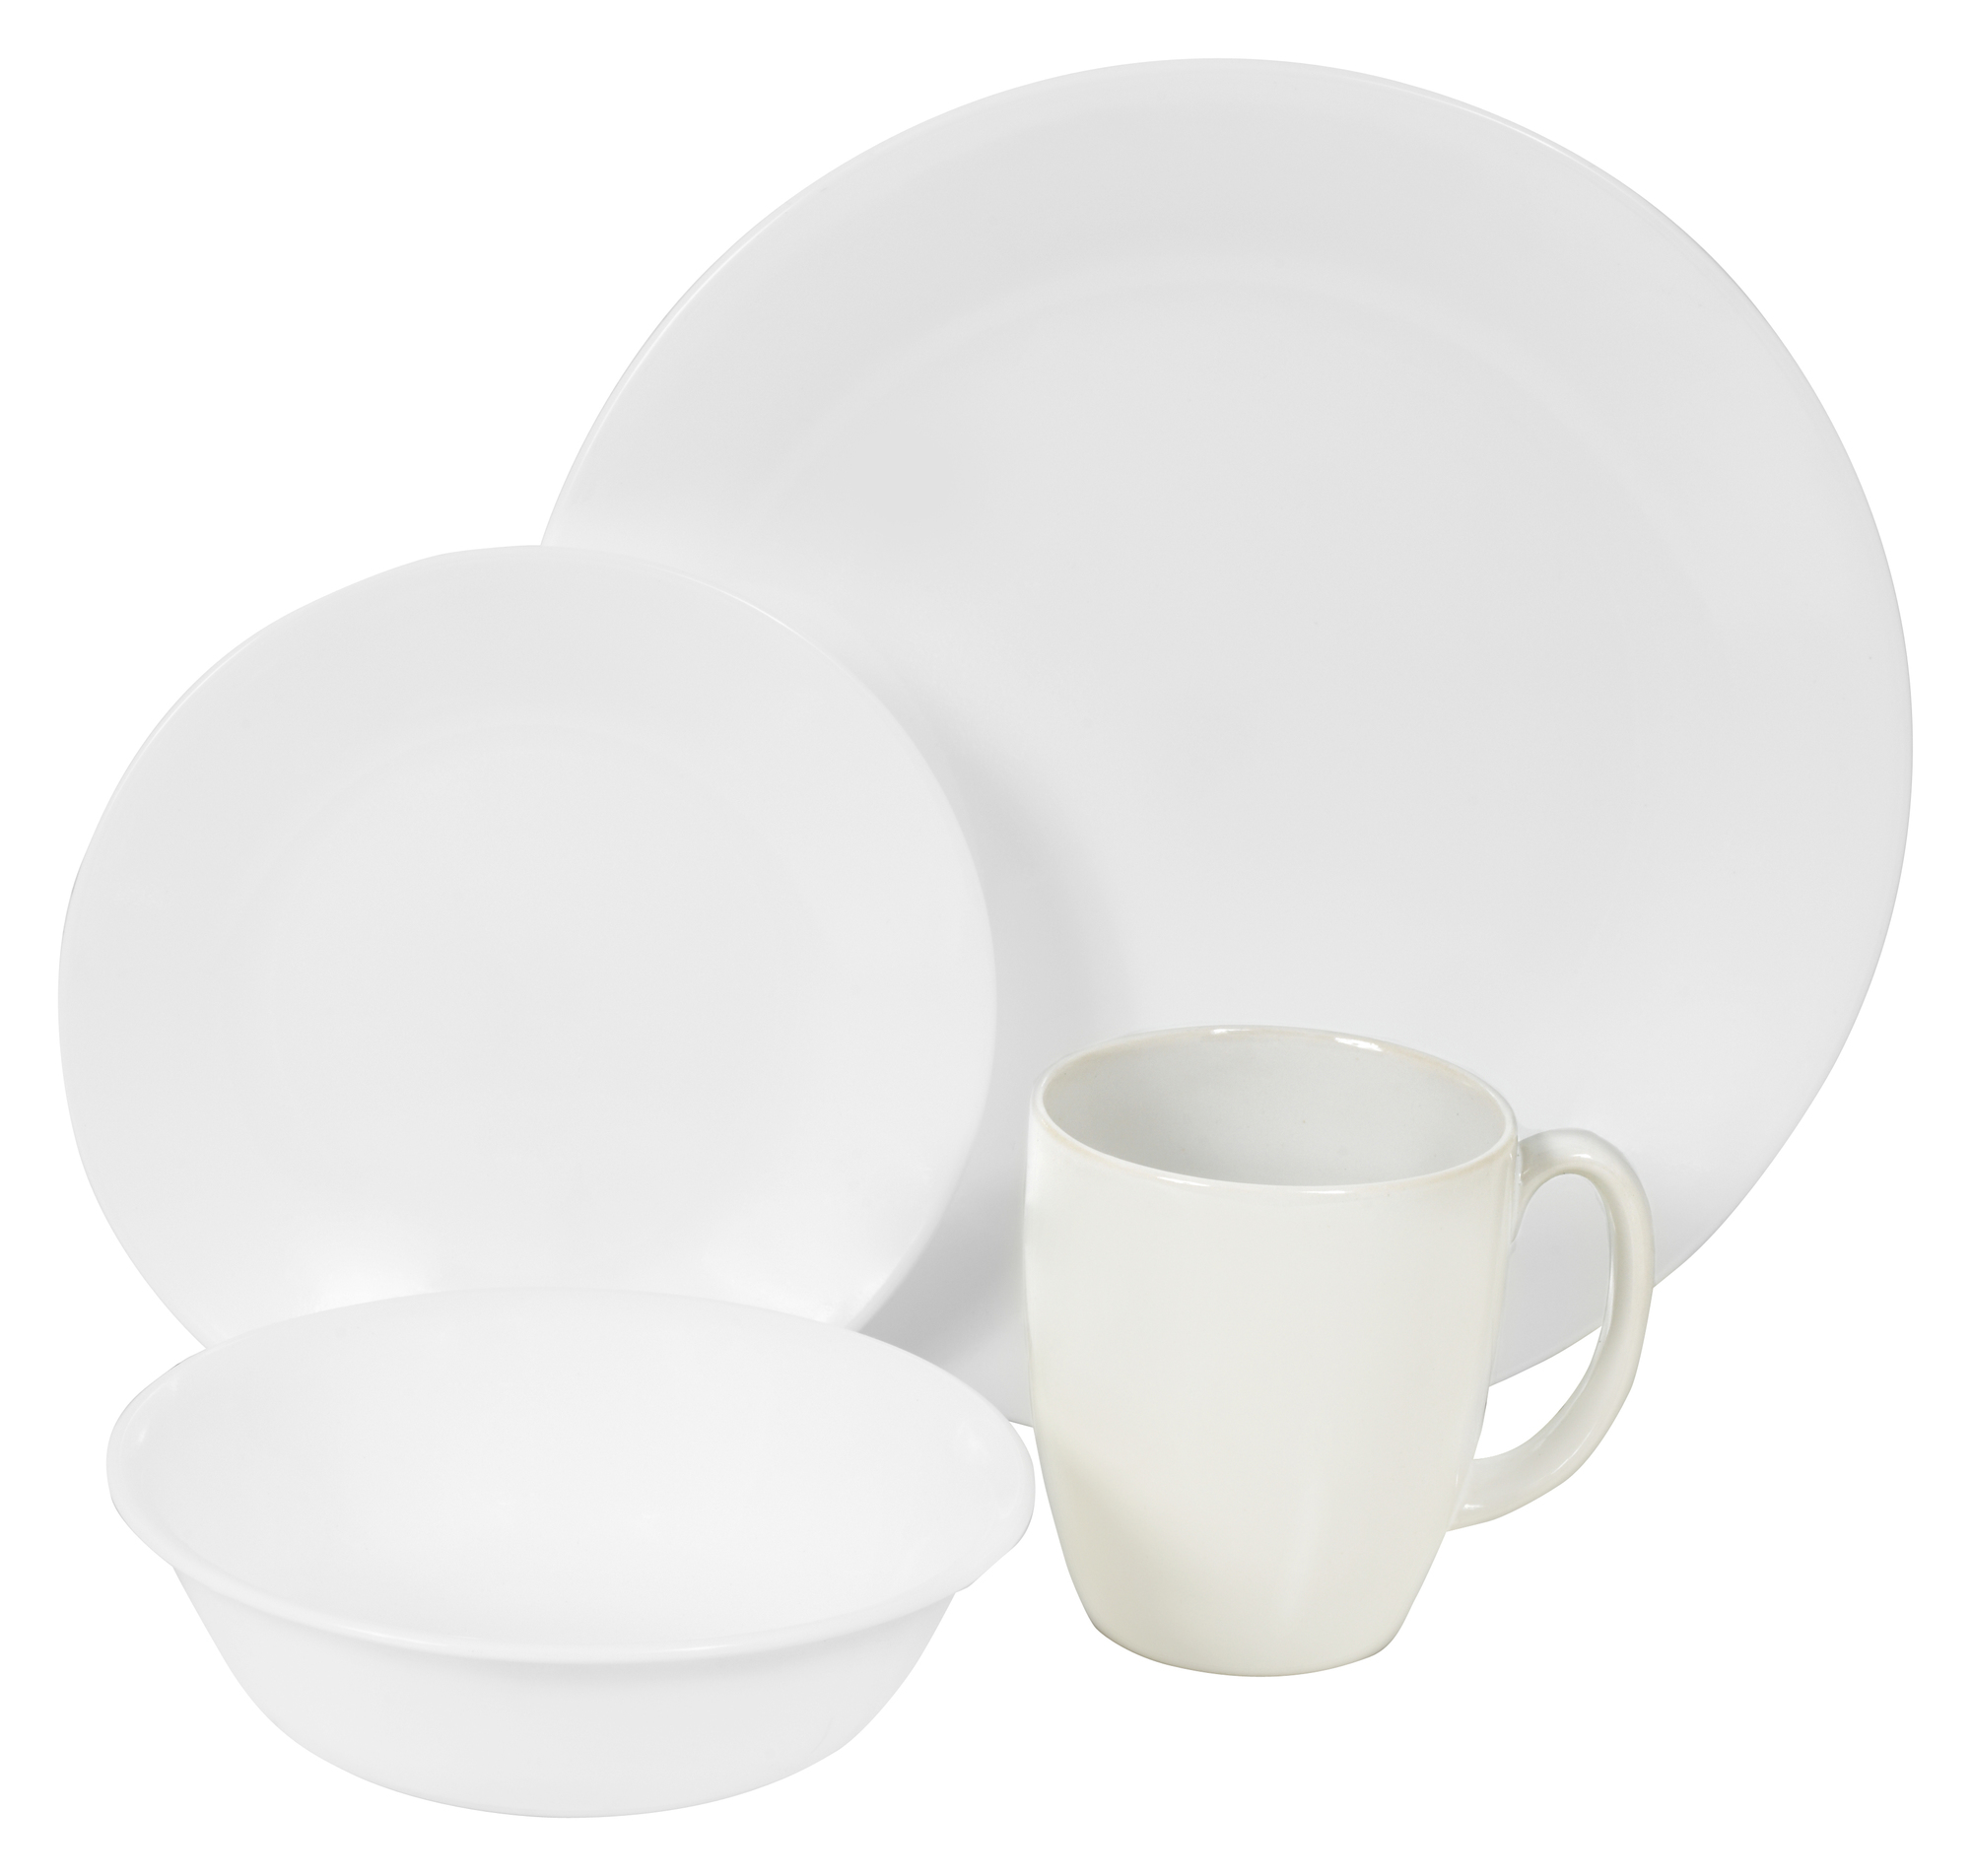 NEW 16 Piece Winter Frost White Livingware Dinner Set - Corelle,Dinnerware Sets 71160220034 | eBay